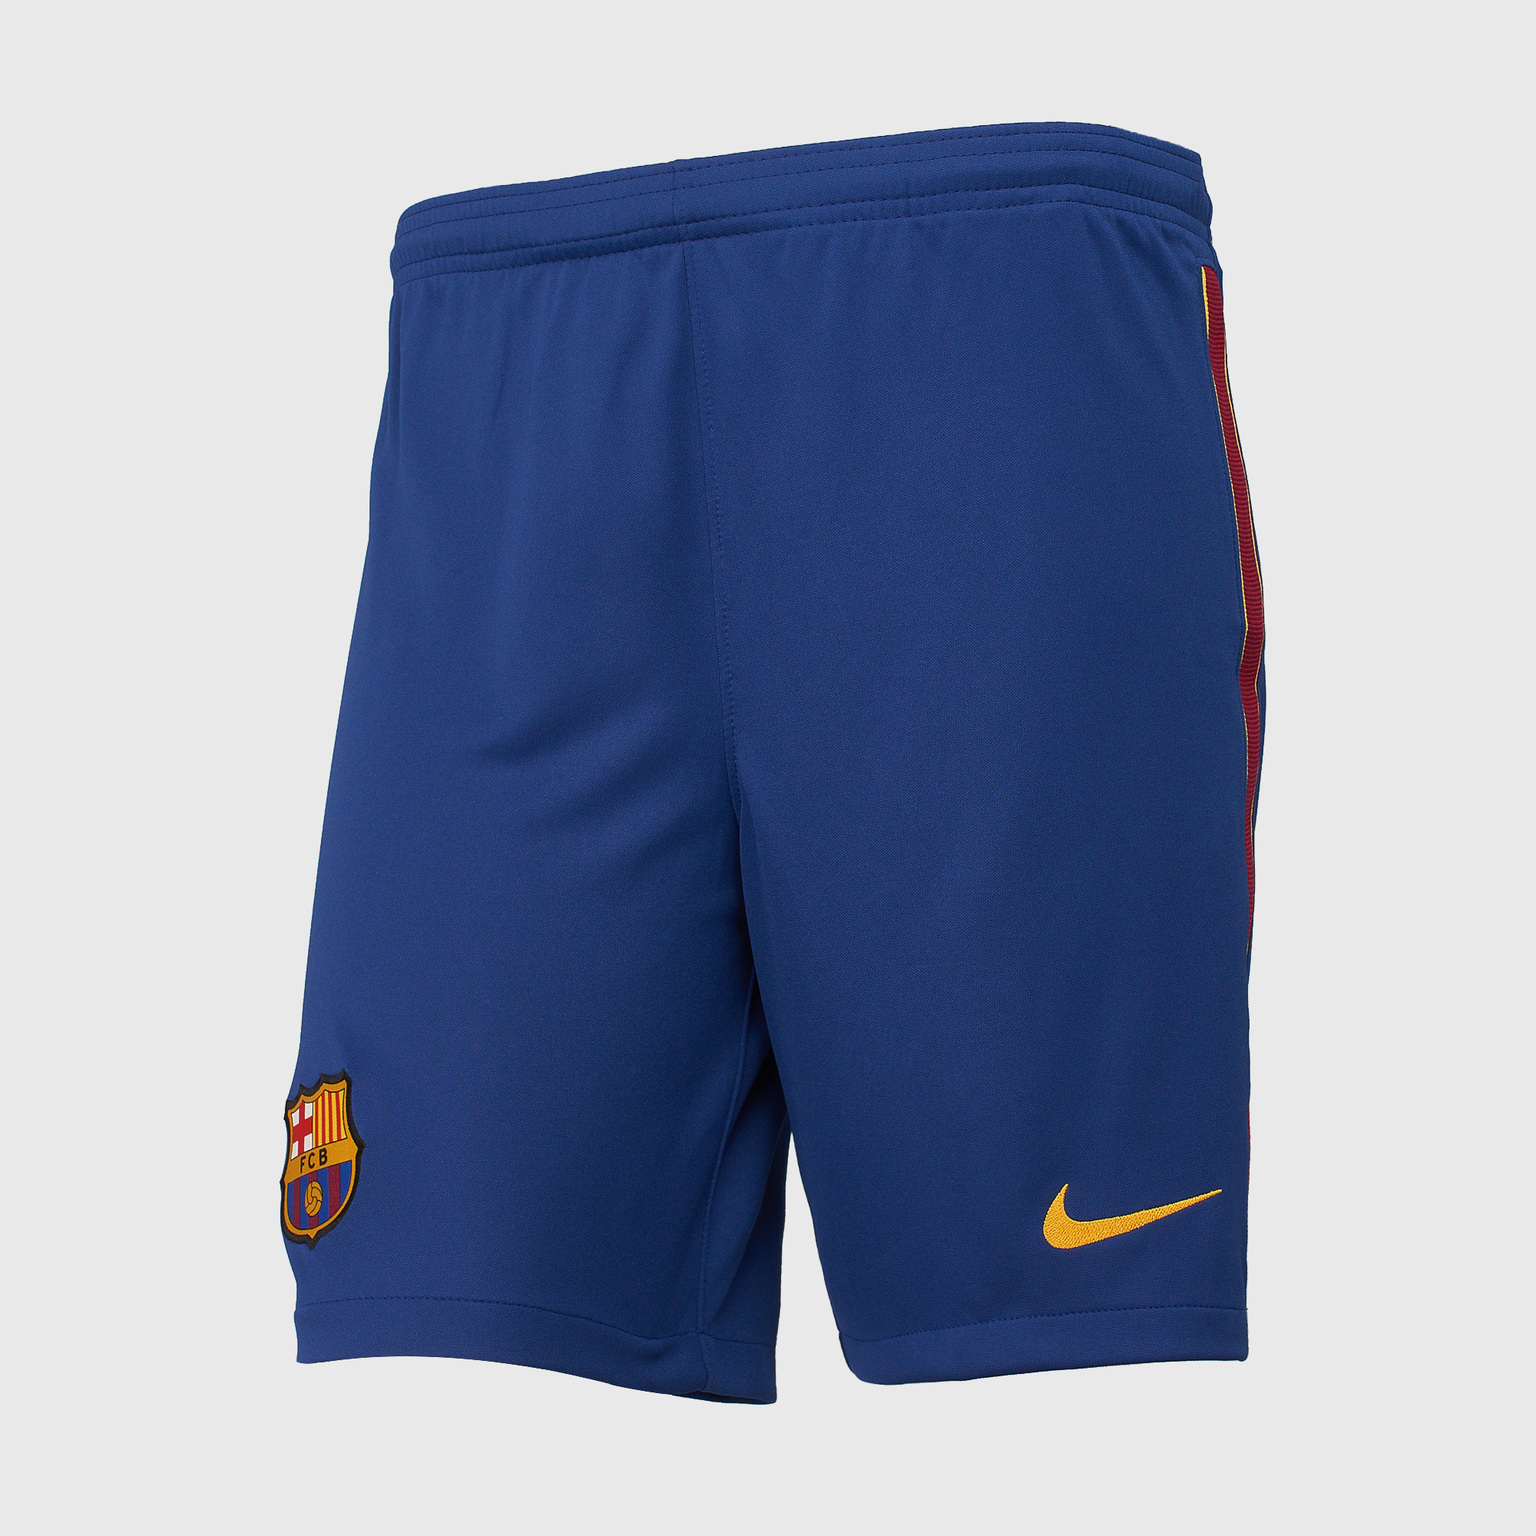 Шорты домашние подростковые Nike Barcelona сезон 2020/21